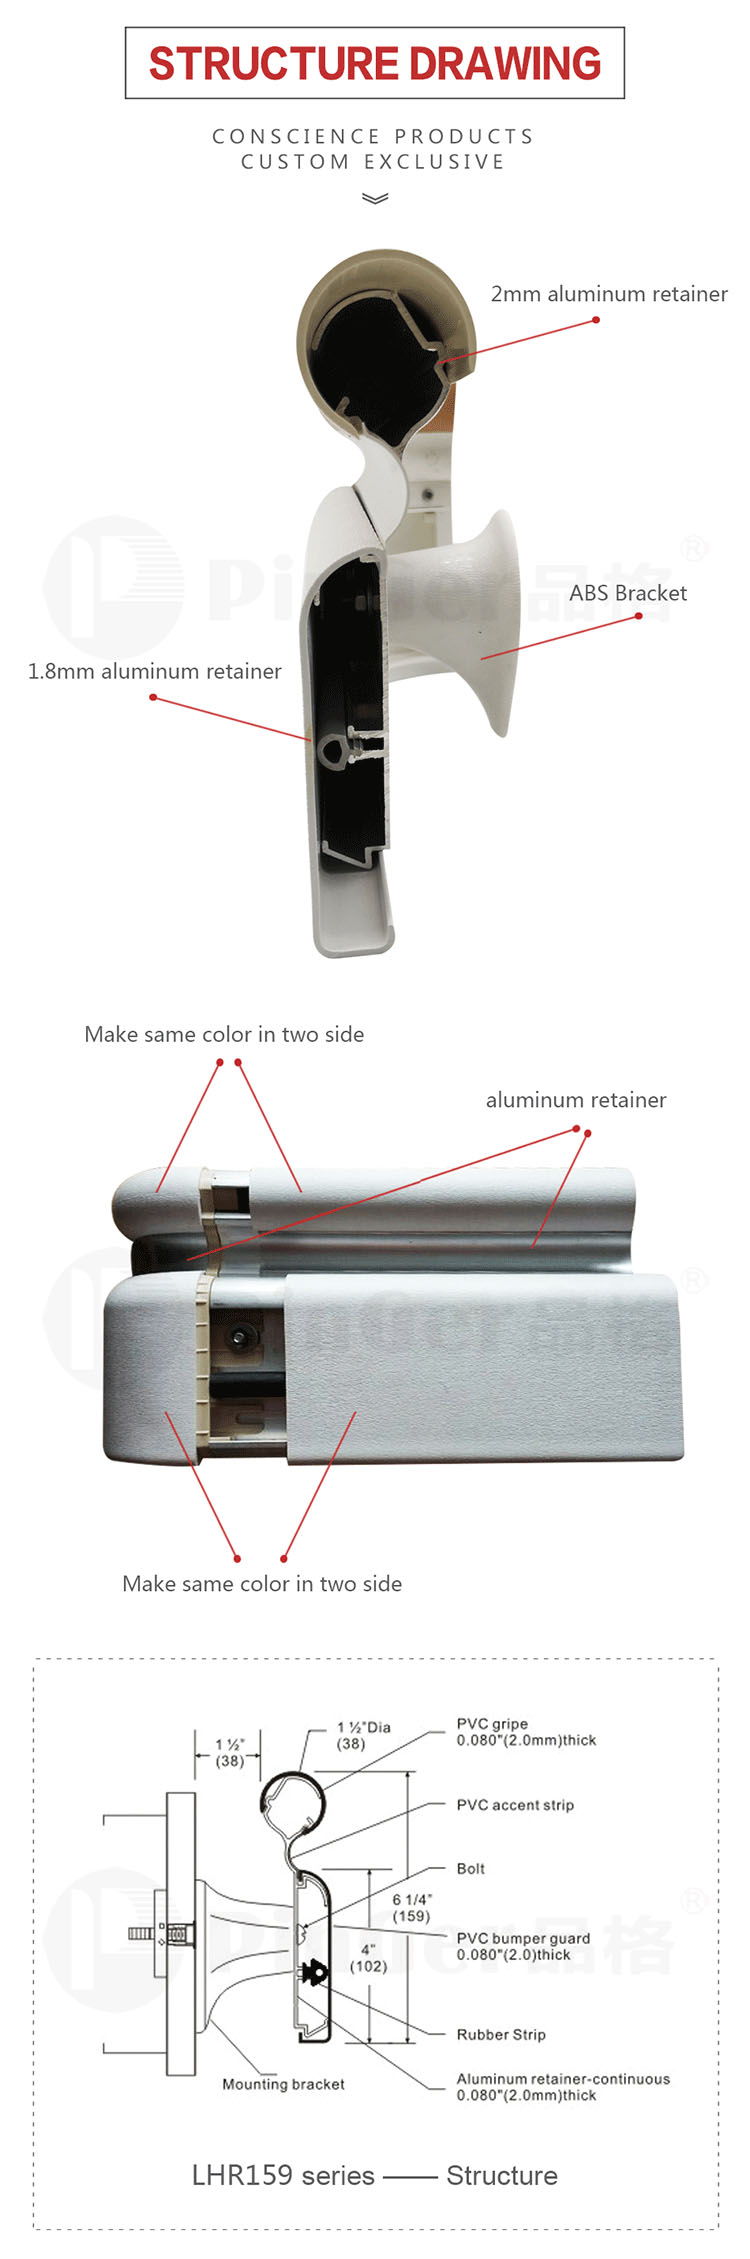 Aluminum Profile Medical Anti-Collision Handrail